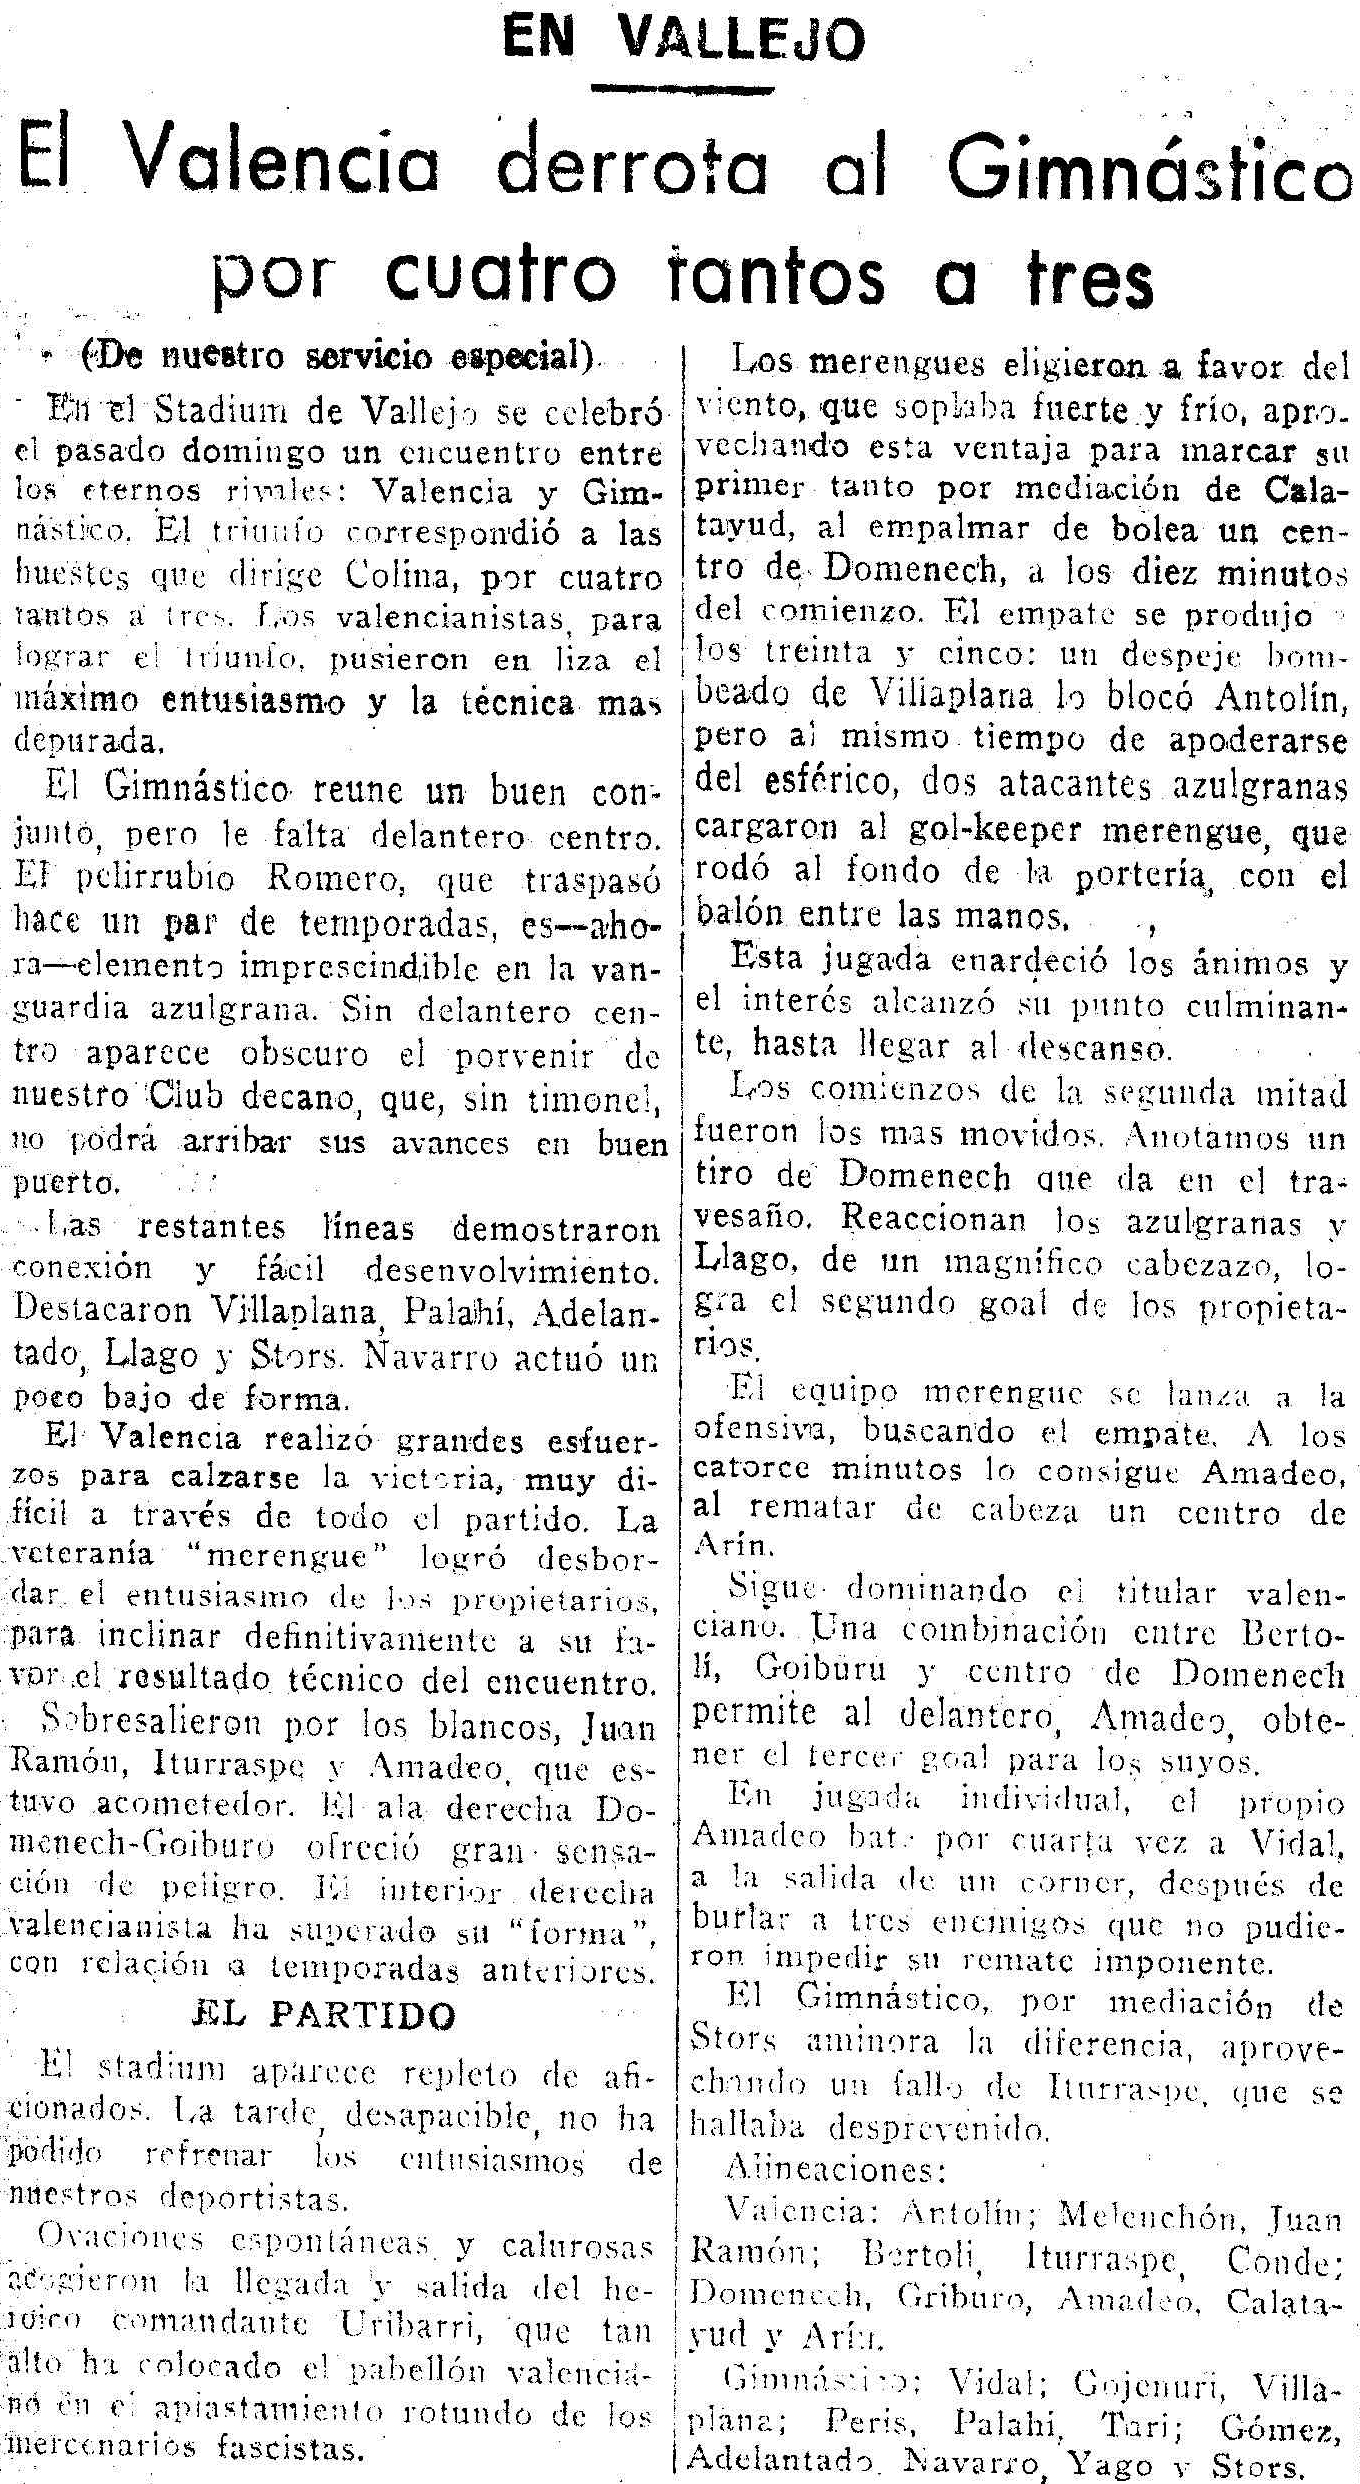 1936.10.11 (11 октября 1936), Гимнастико - Валенсия, 3-4.png